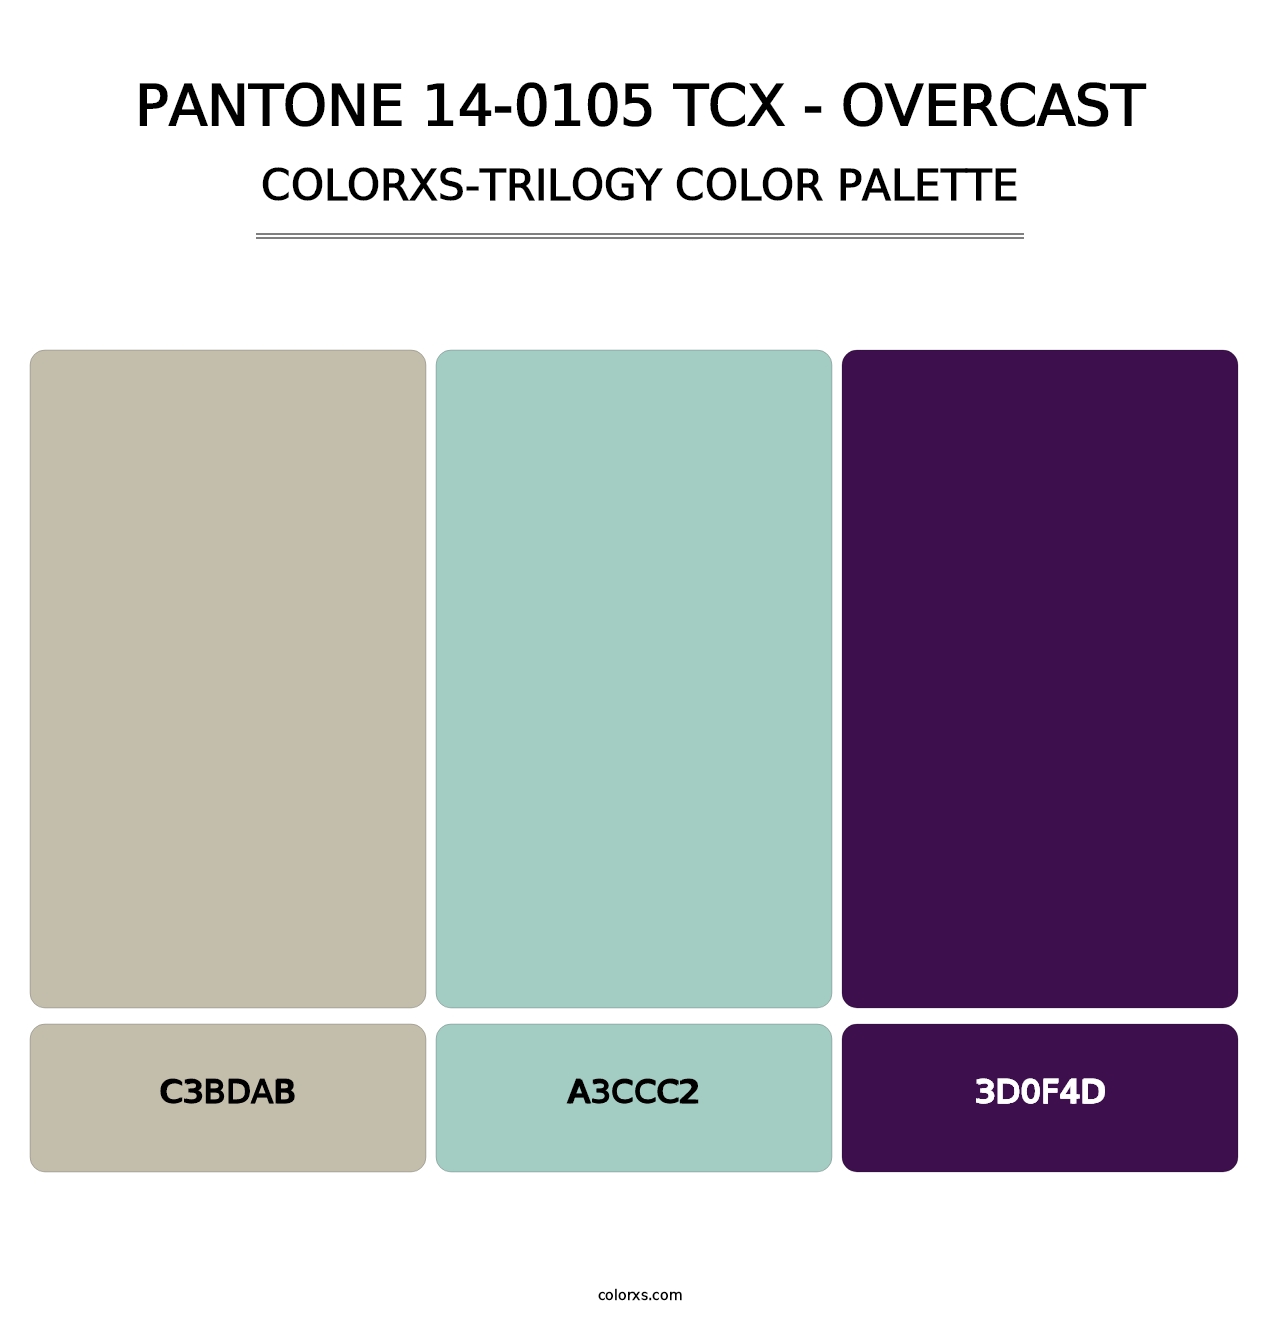 PANTONE 14-0105 TCX - Overcast - Colorxs Trilogy Palette